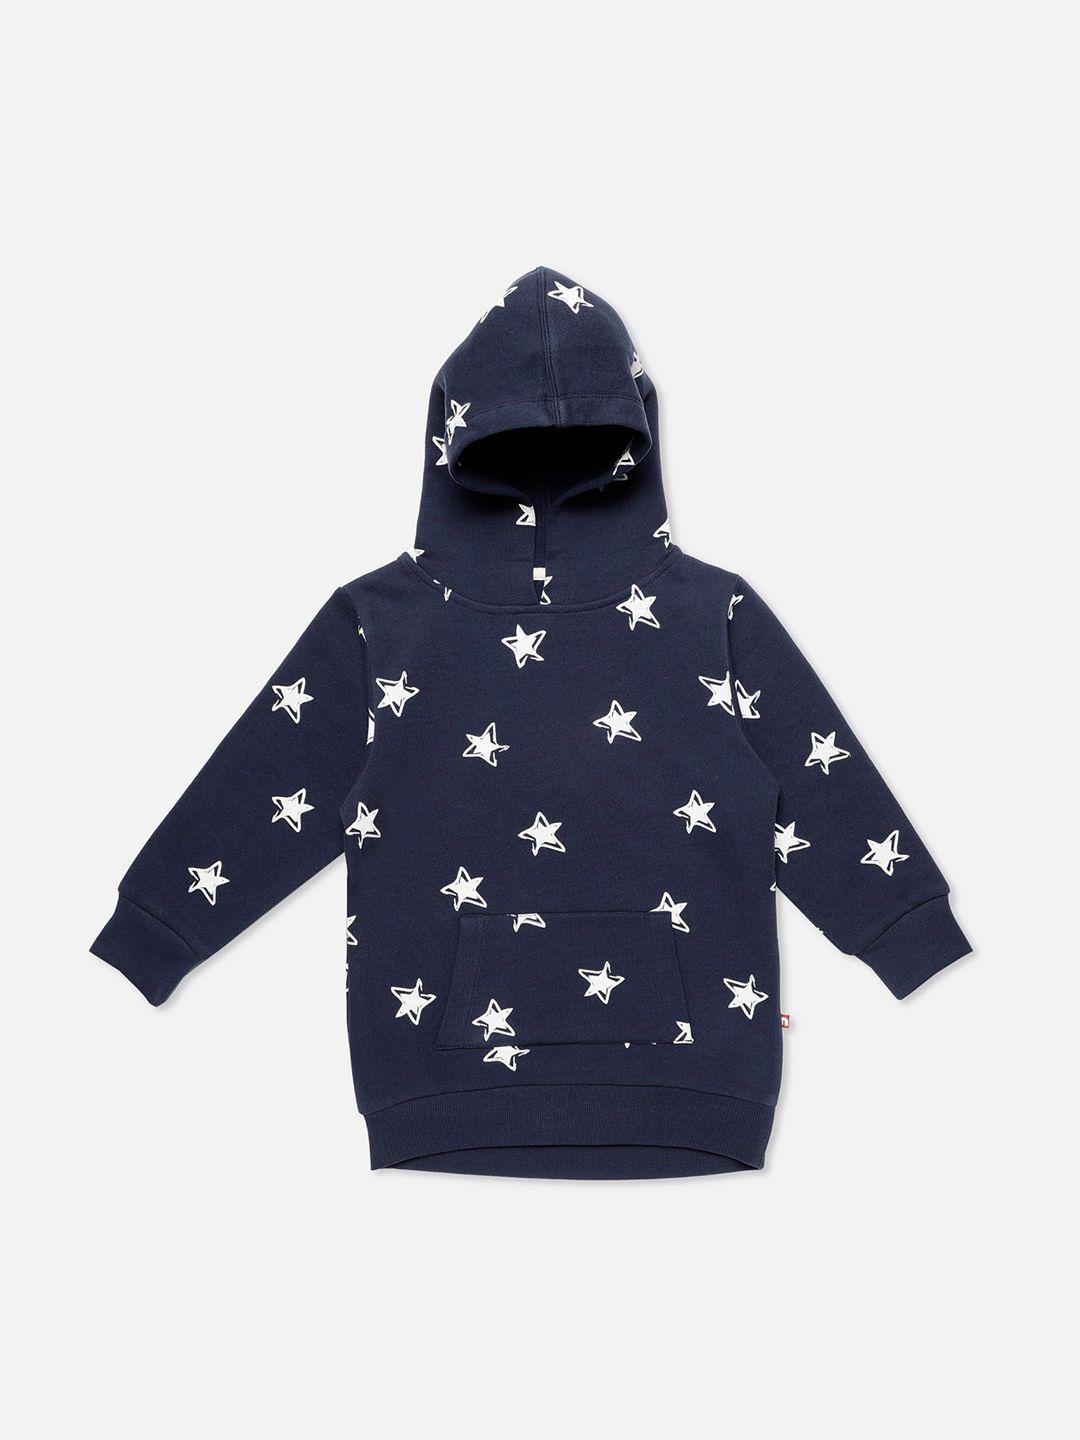 nino bambino unisex organic cotton kids navy blue & white printed hooded sweatshirt